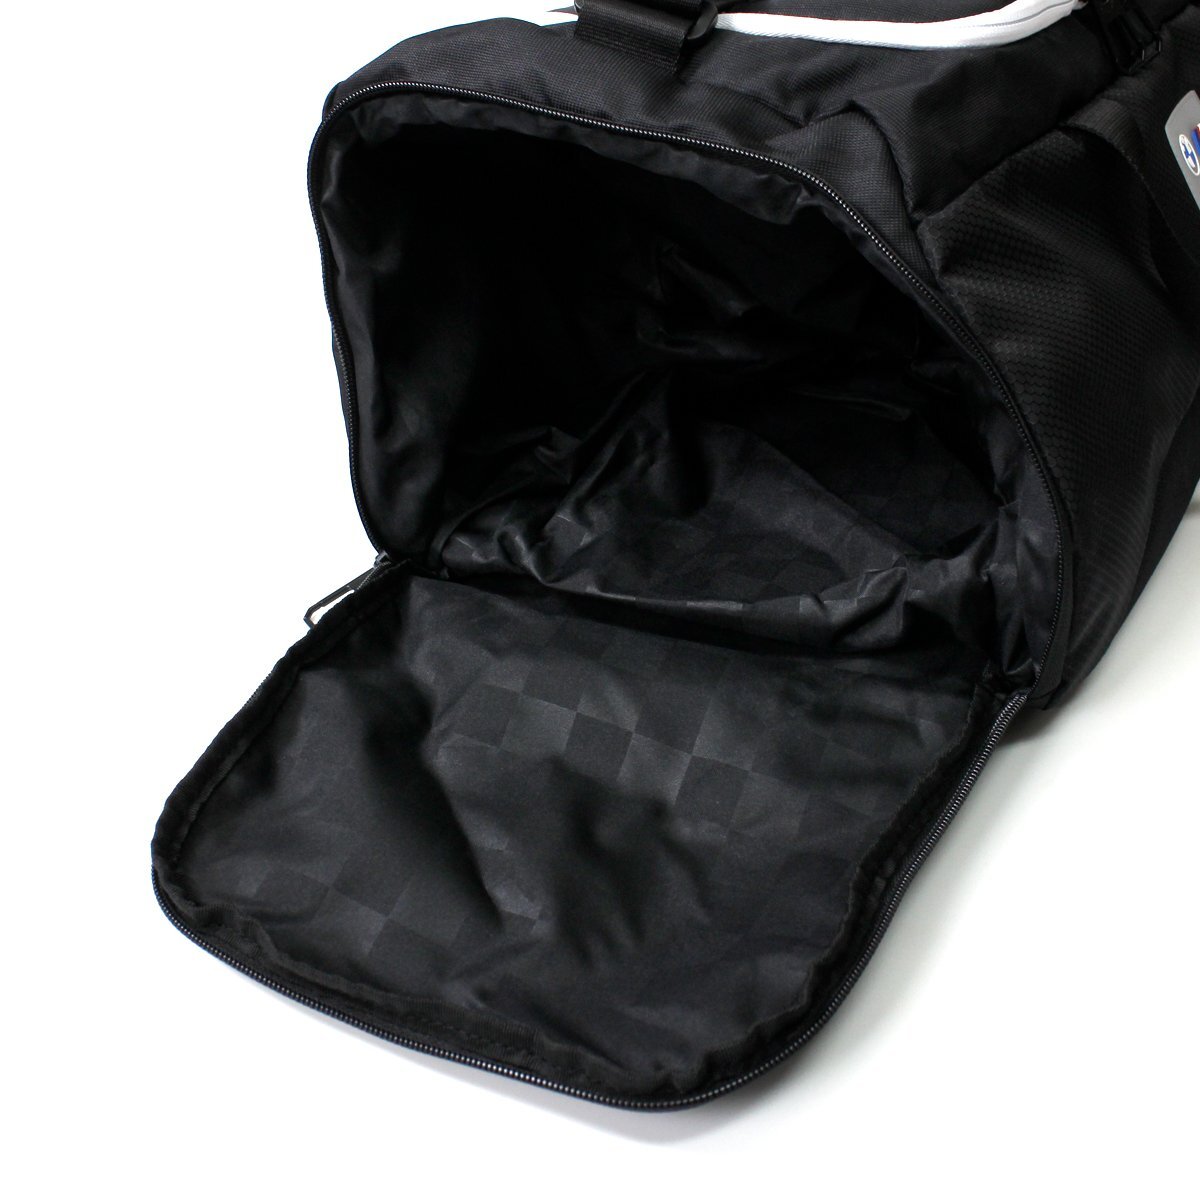  new goods PUMA BMW Motorsport Puma duffel bag sport bag 32L shoulder bag Golf BAG bag bag black *CS1986